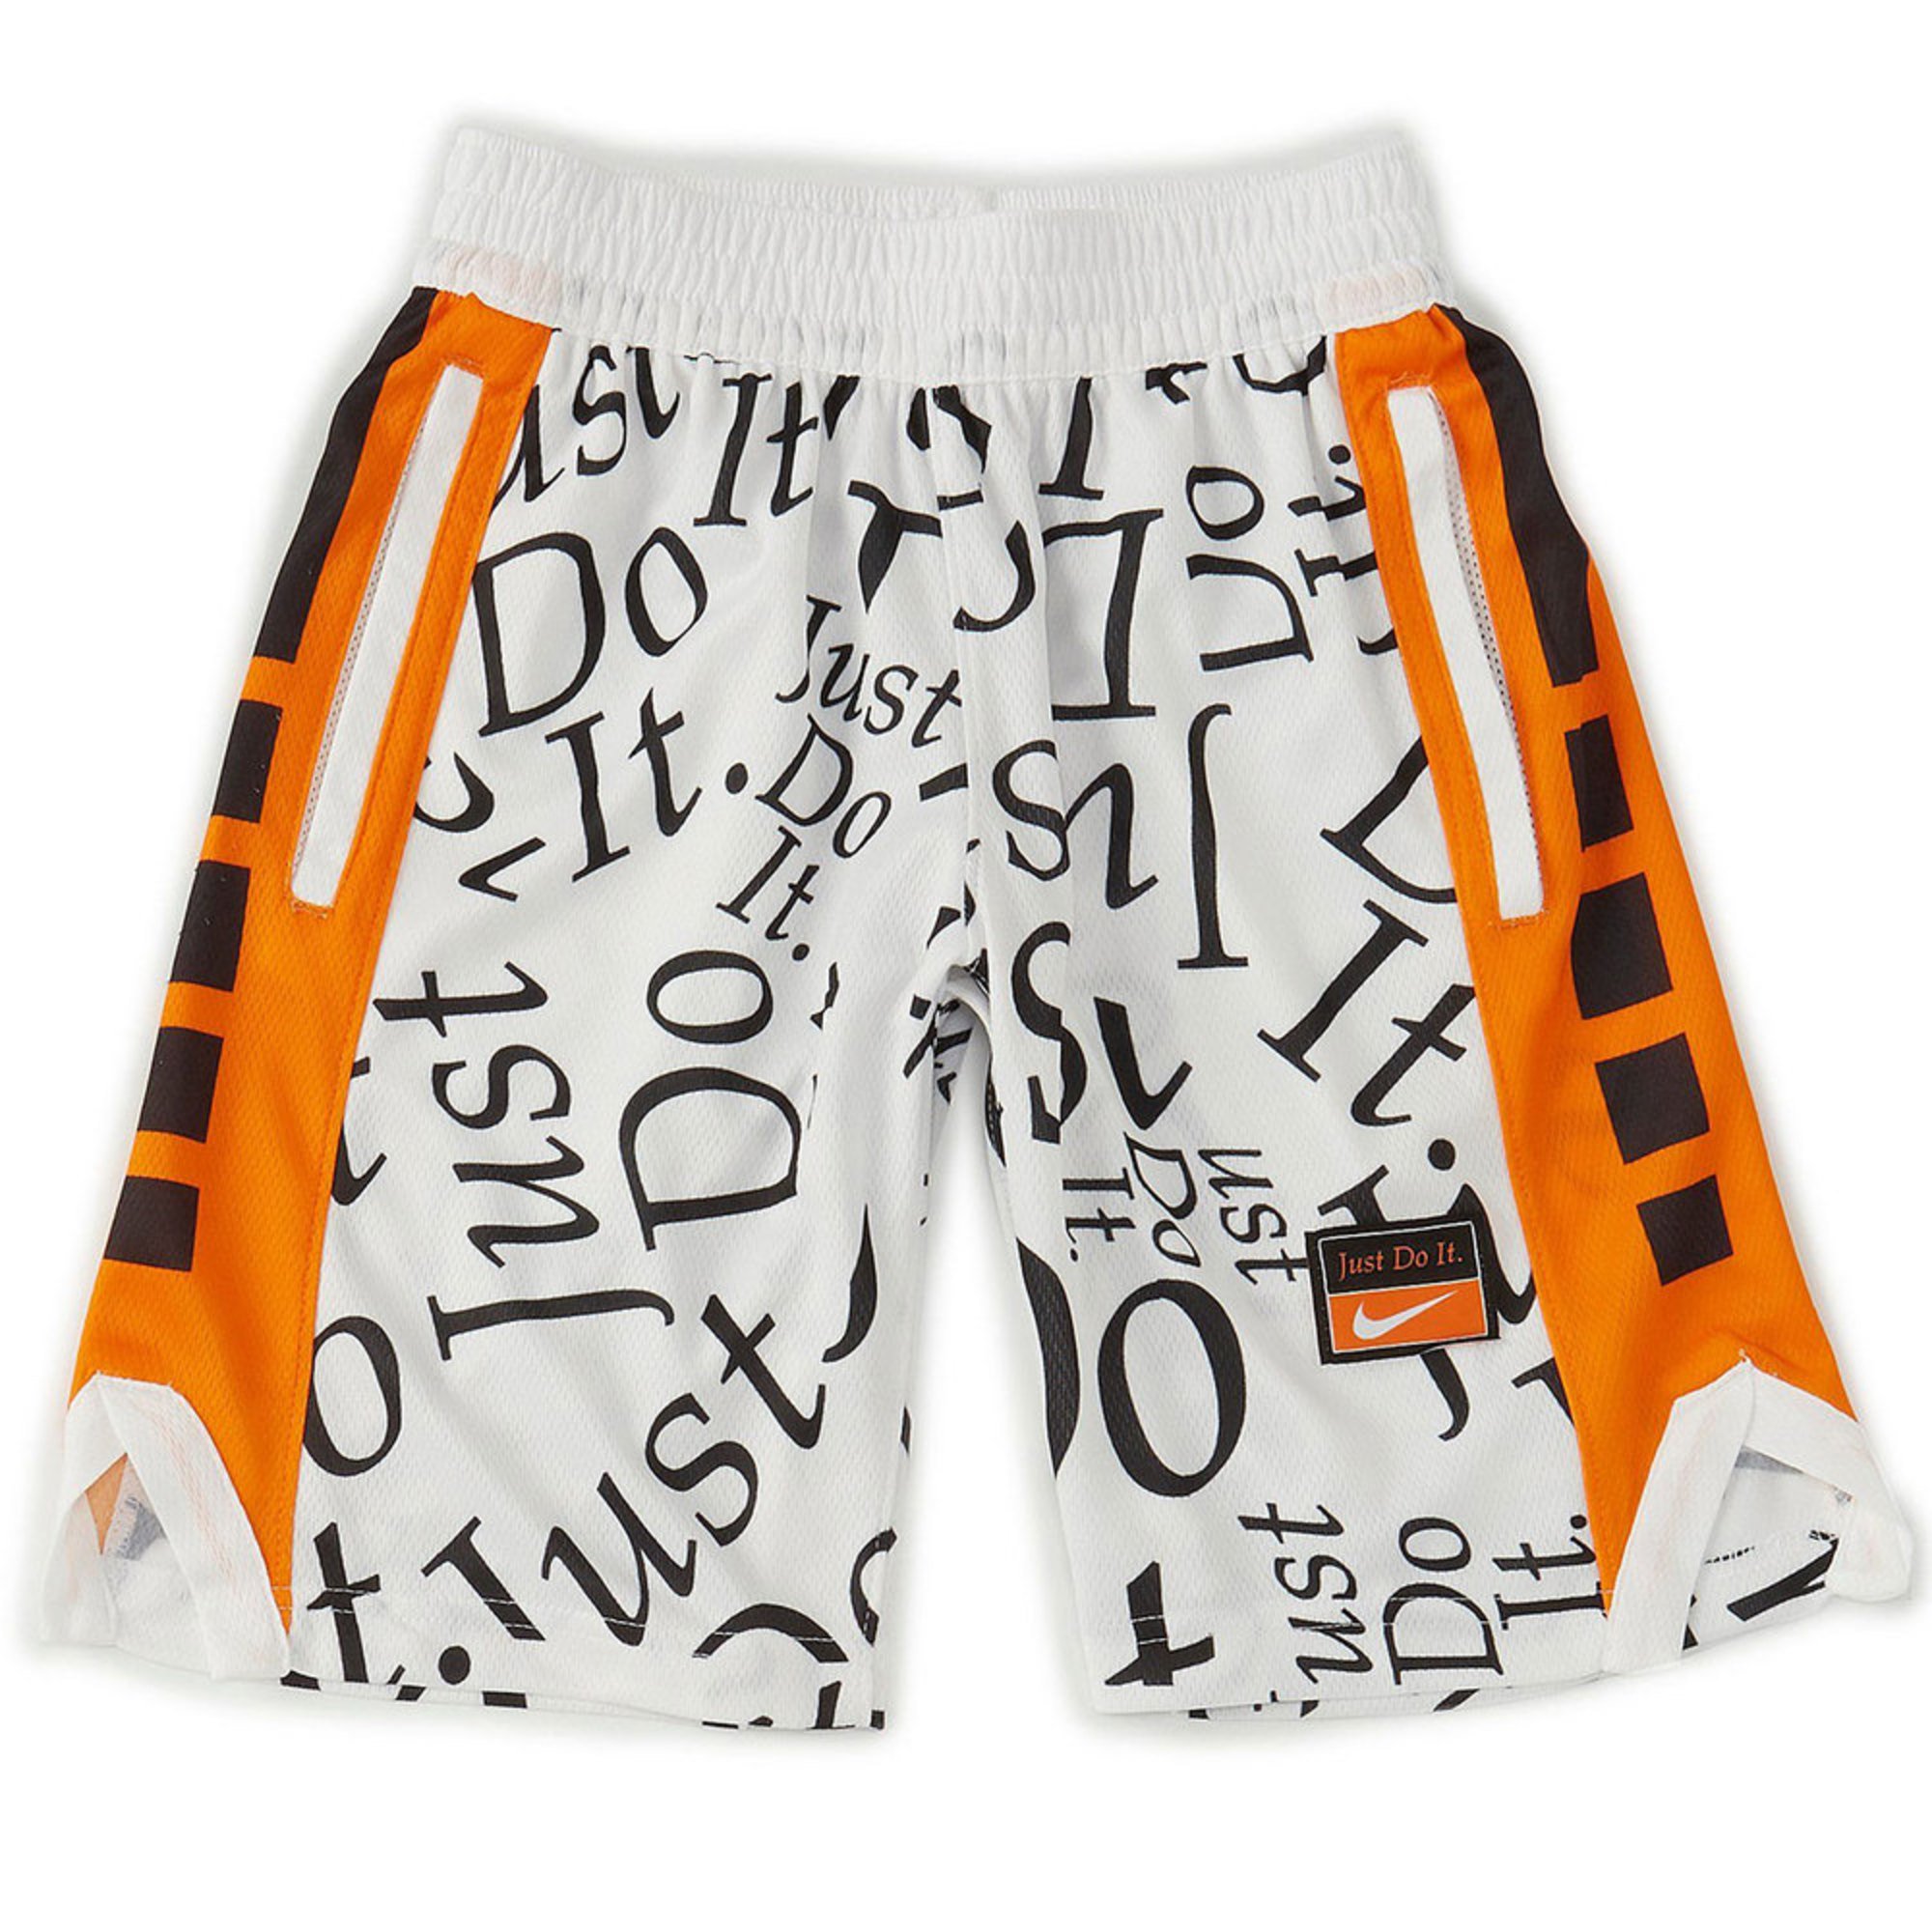 boys orange nike shorts